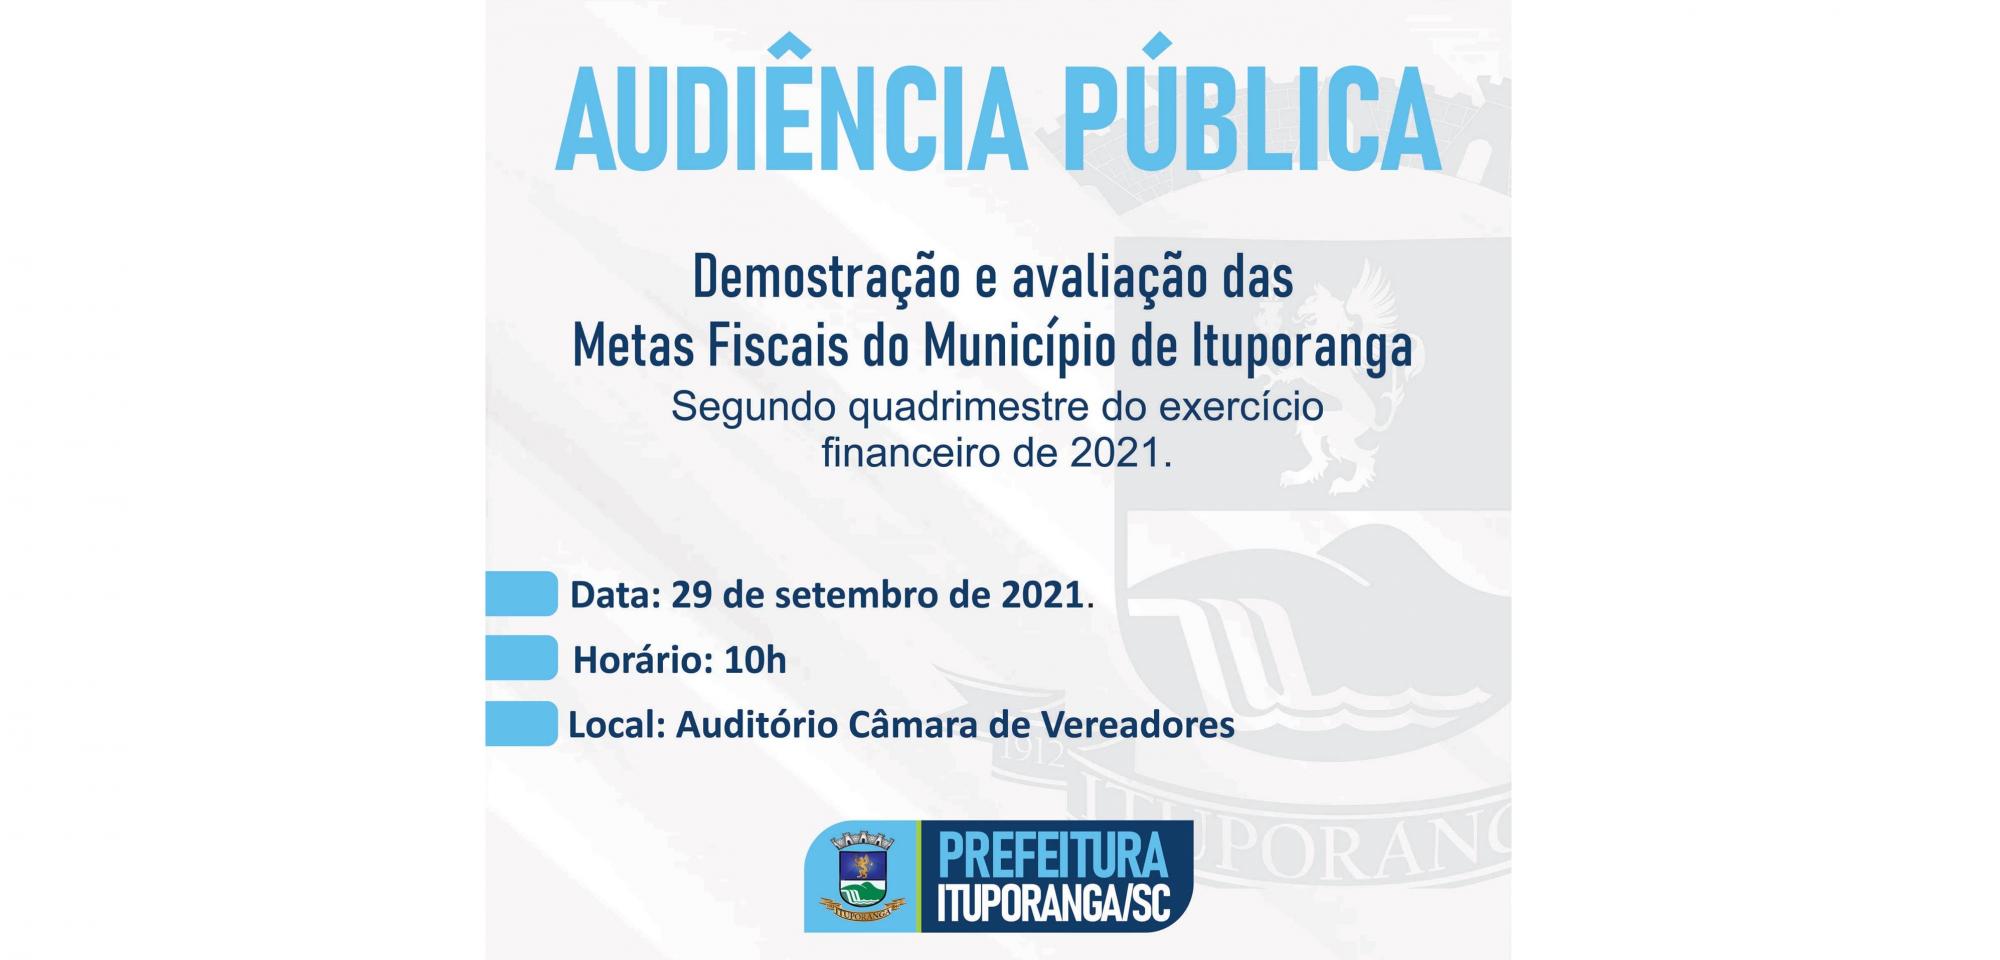 Audiência Pública vai apresentar metas fiscais da administração de Ituporanga